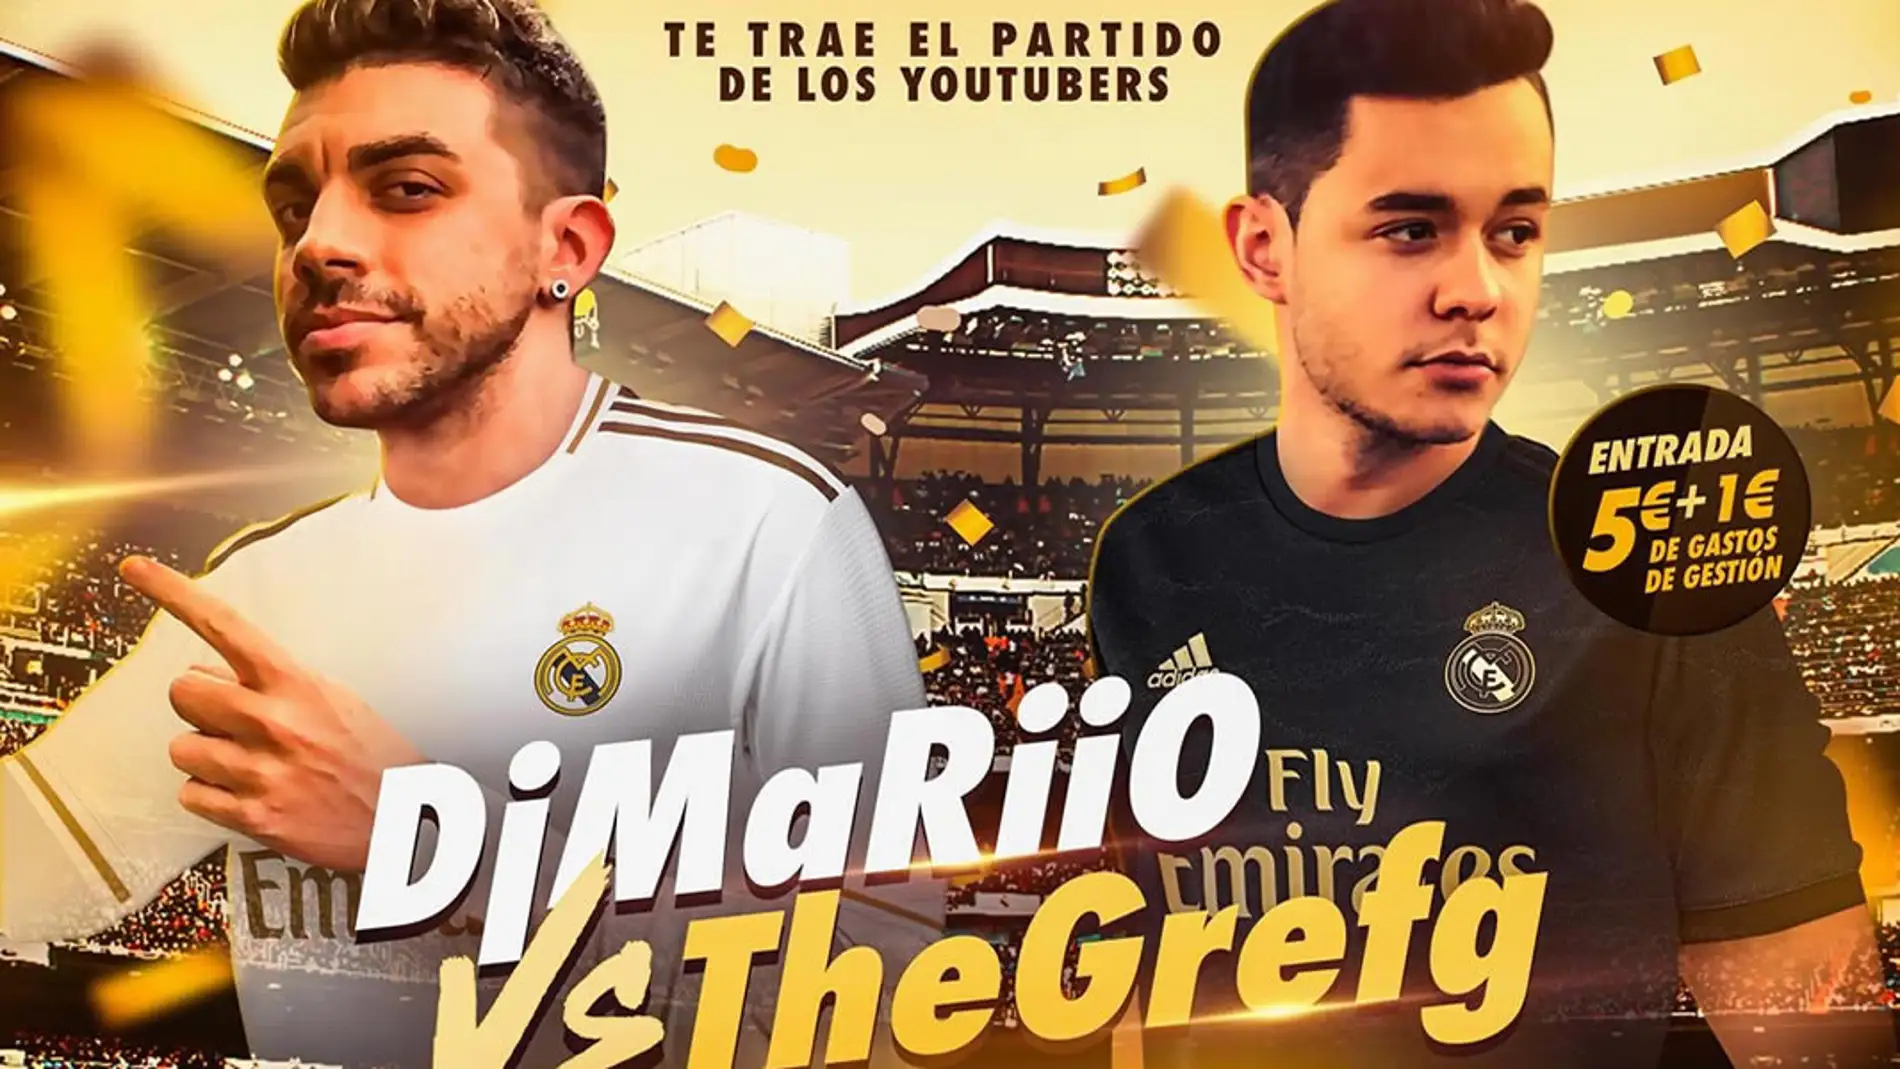 DjMariio y TheGrefg anuncian un partido benéfico de Santiago Bernabéu